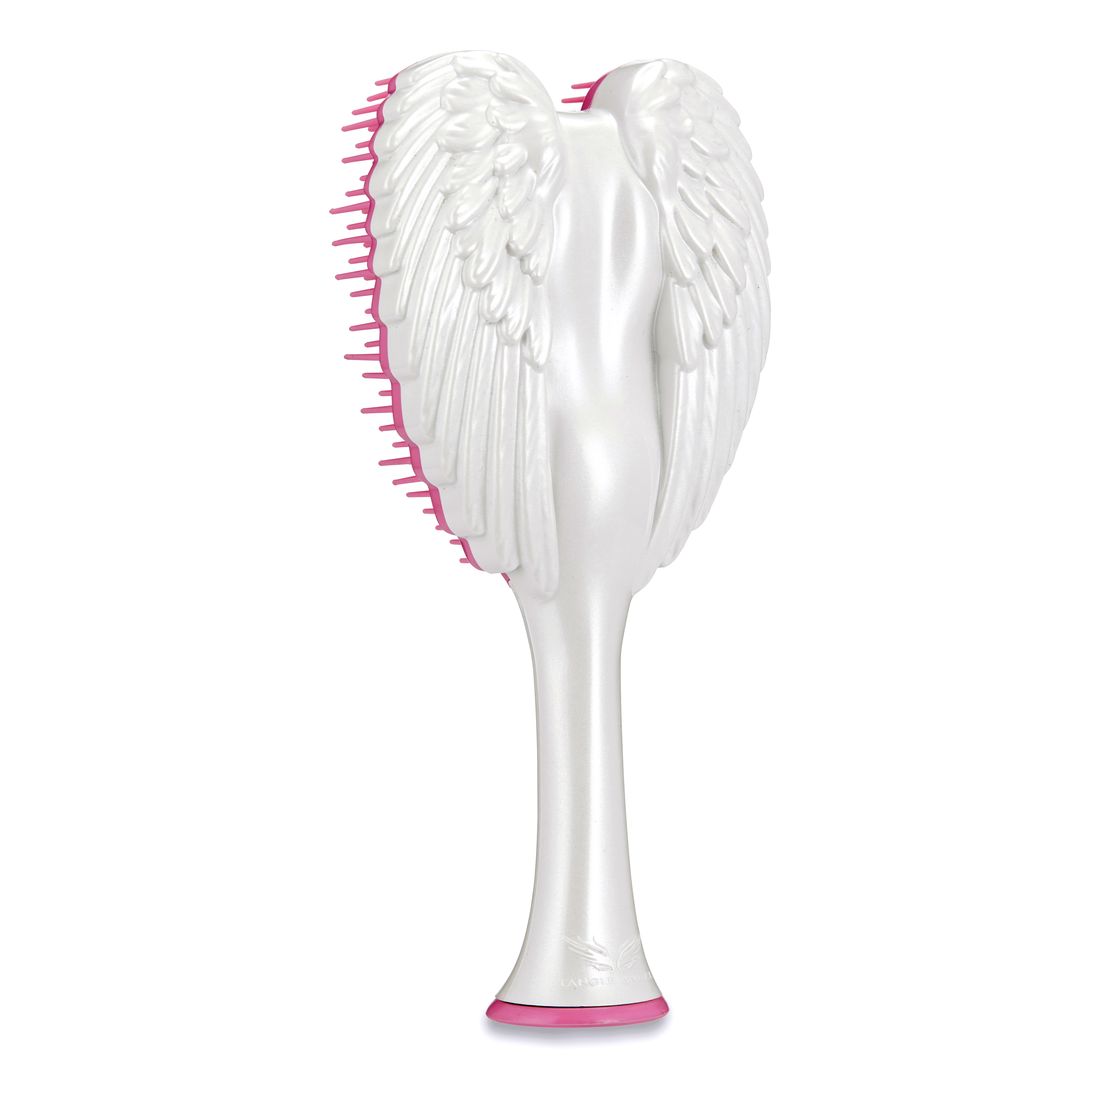 Tangle Angel Cherub 2.0 Hair Brush - Gloss White 21845